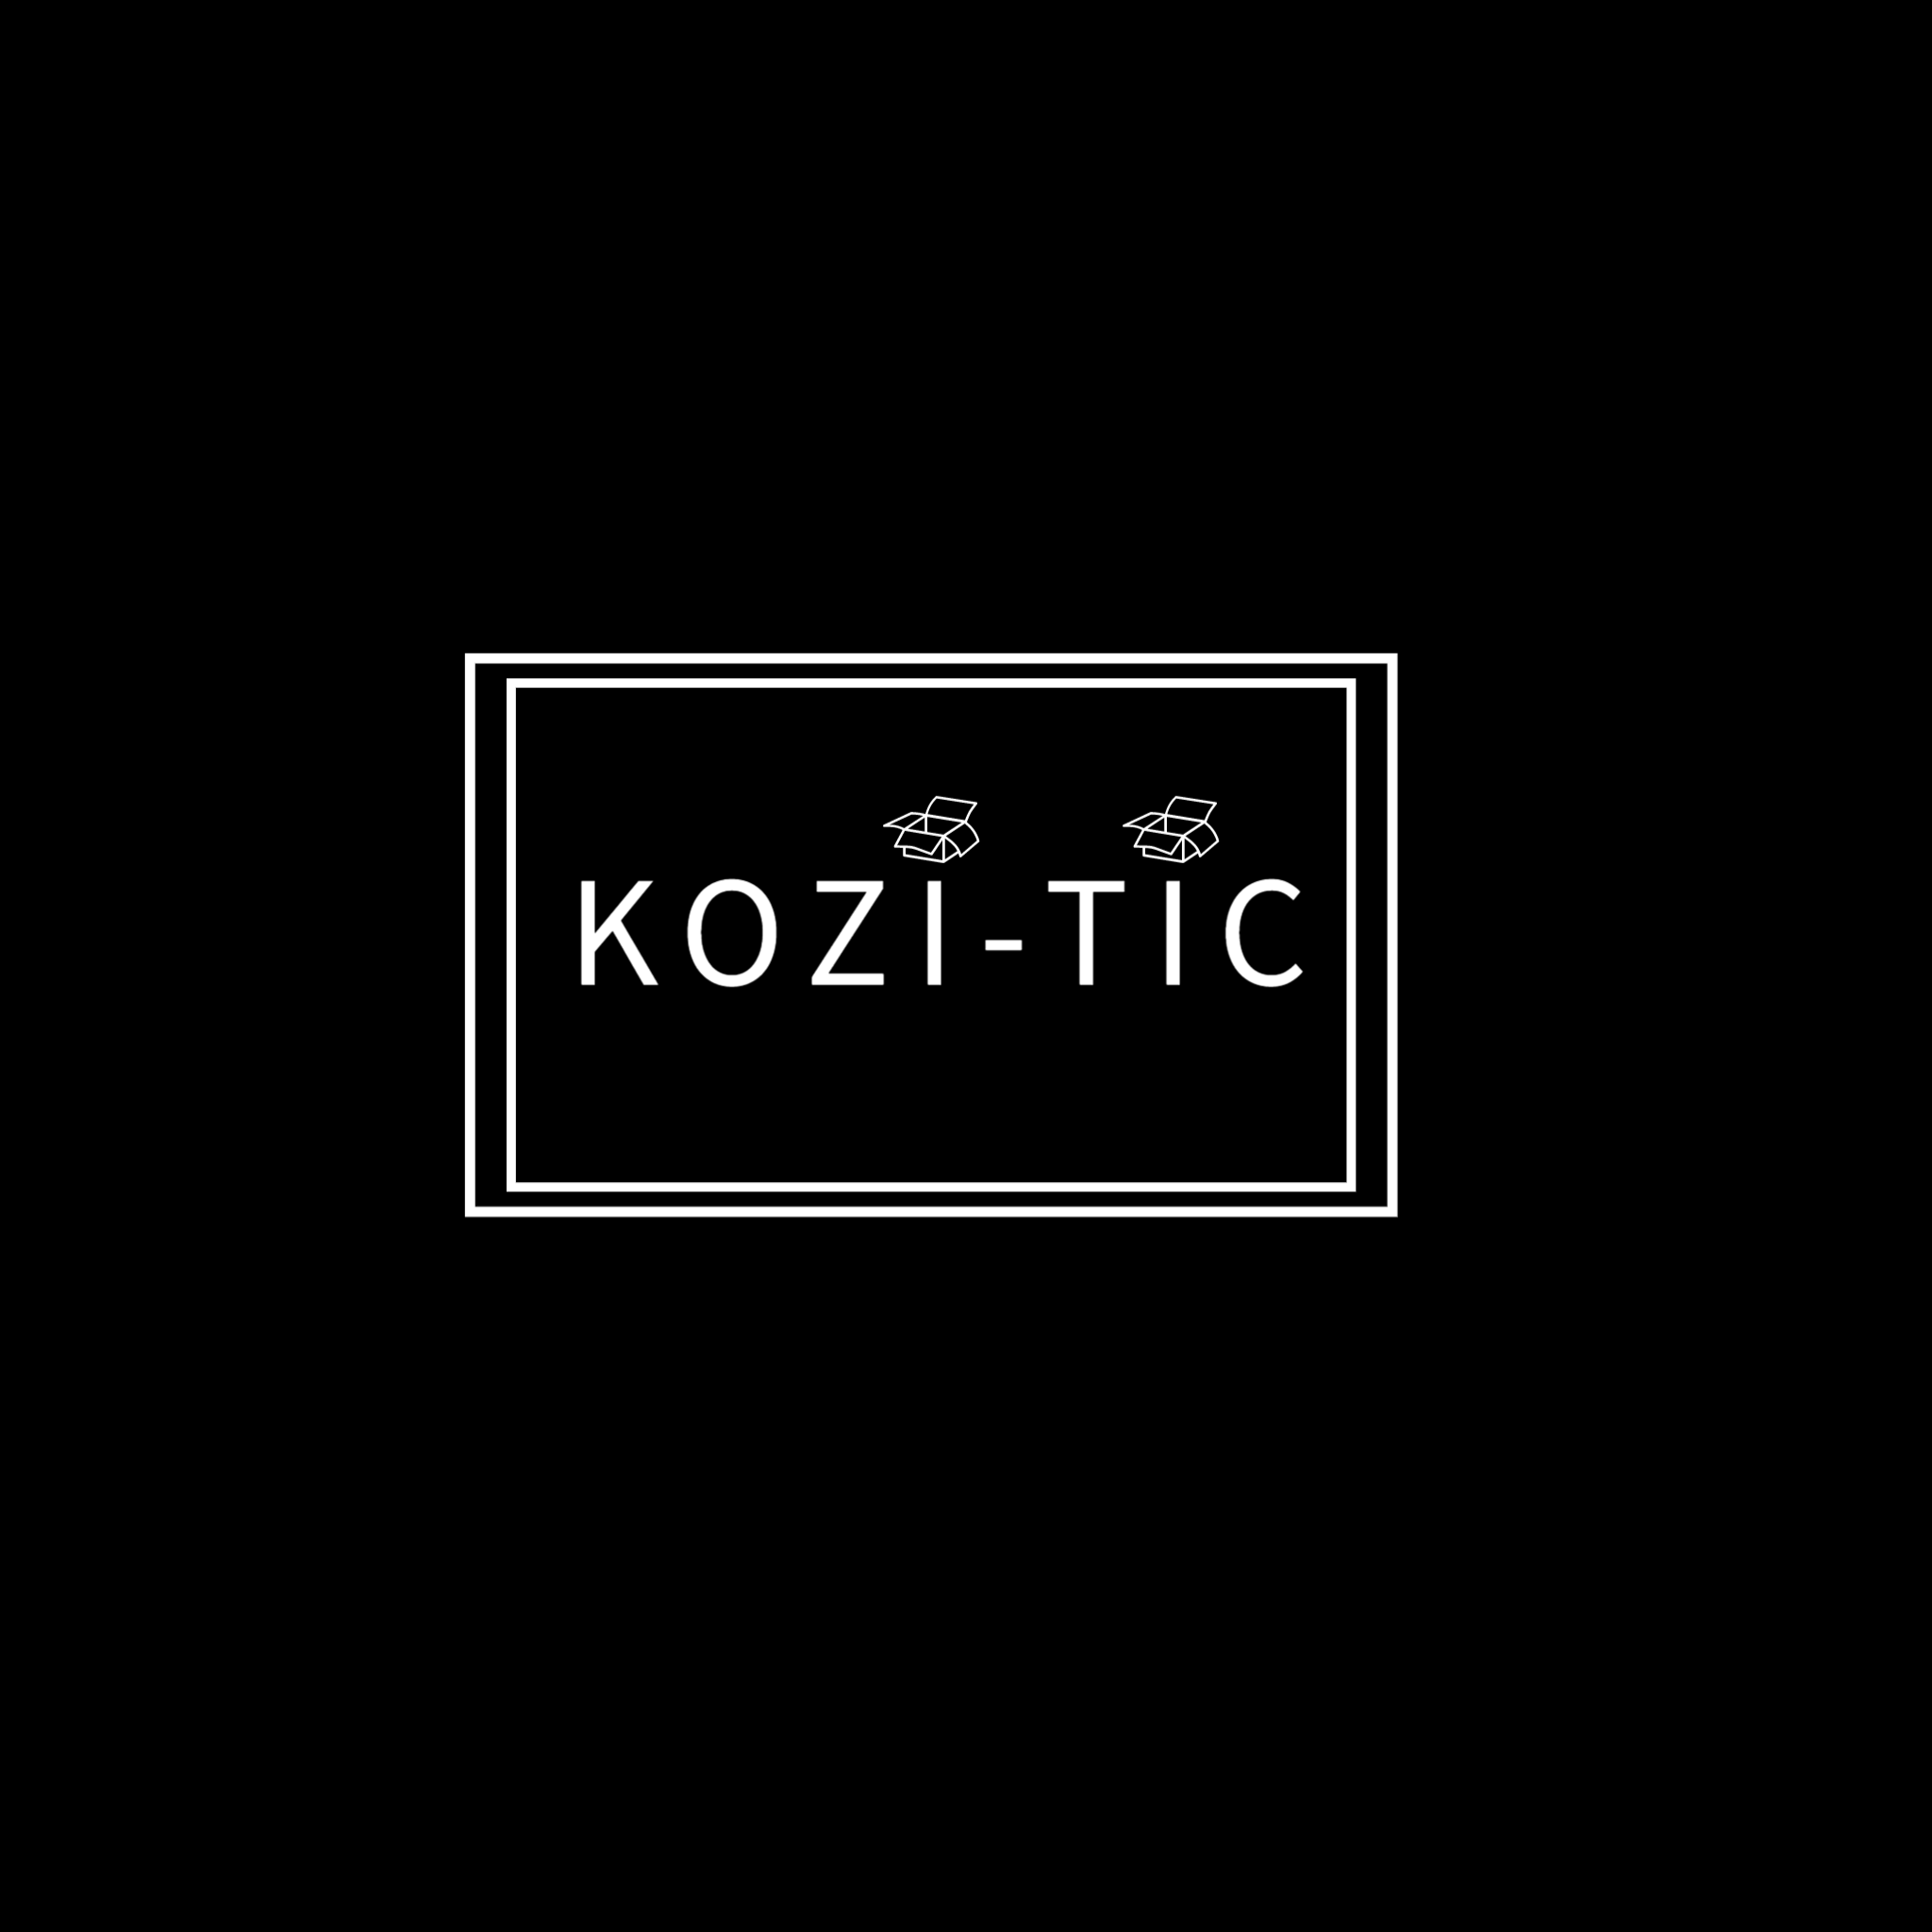 kozi-tic